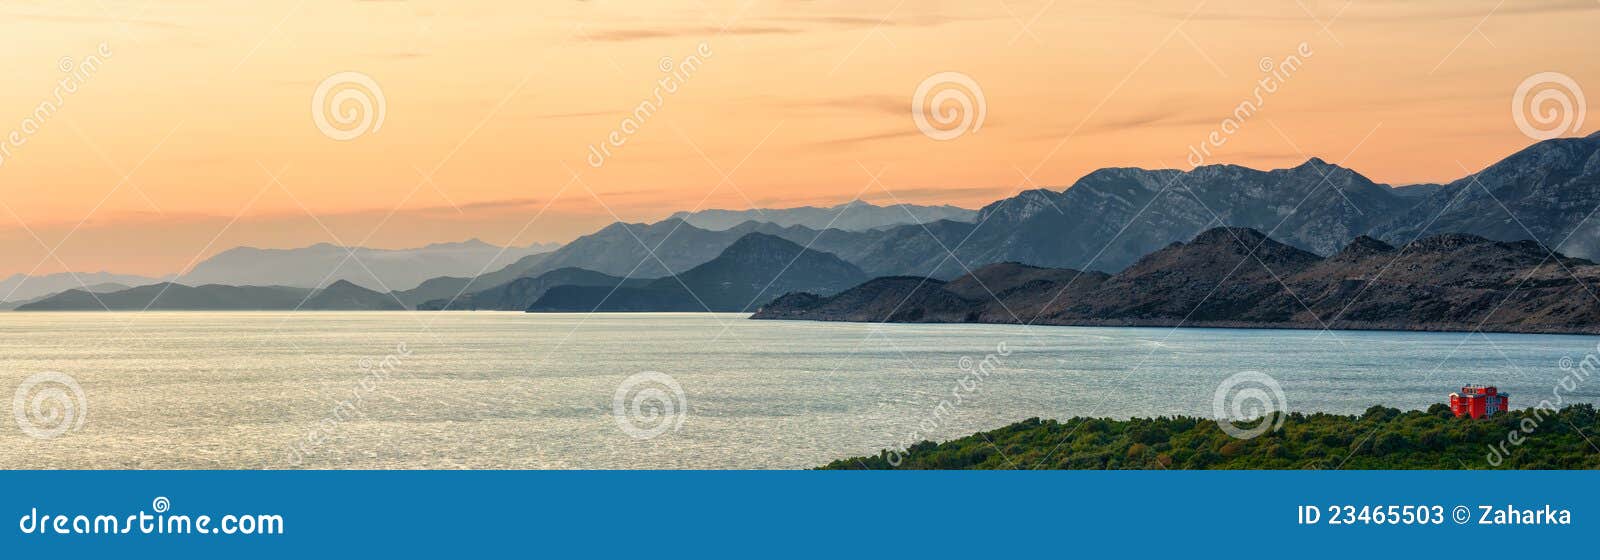 montenegro sunset panorama